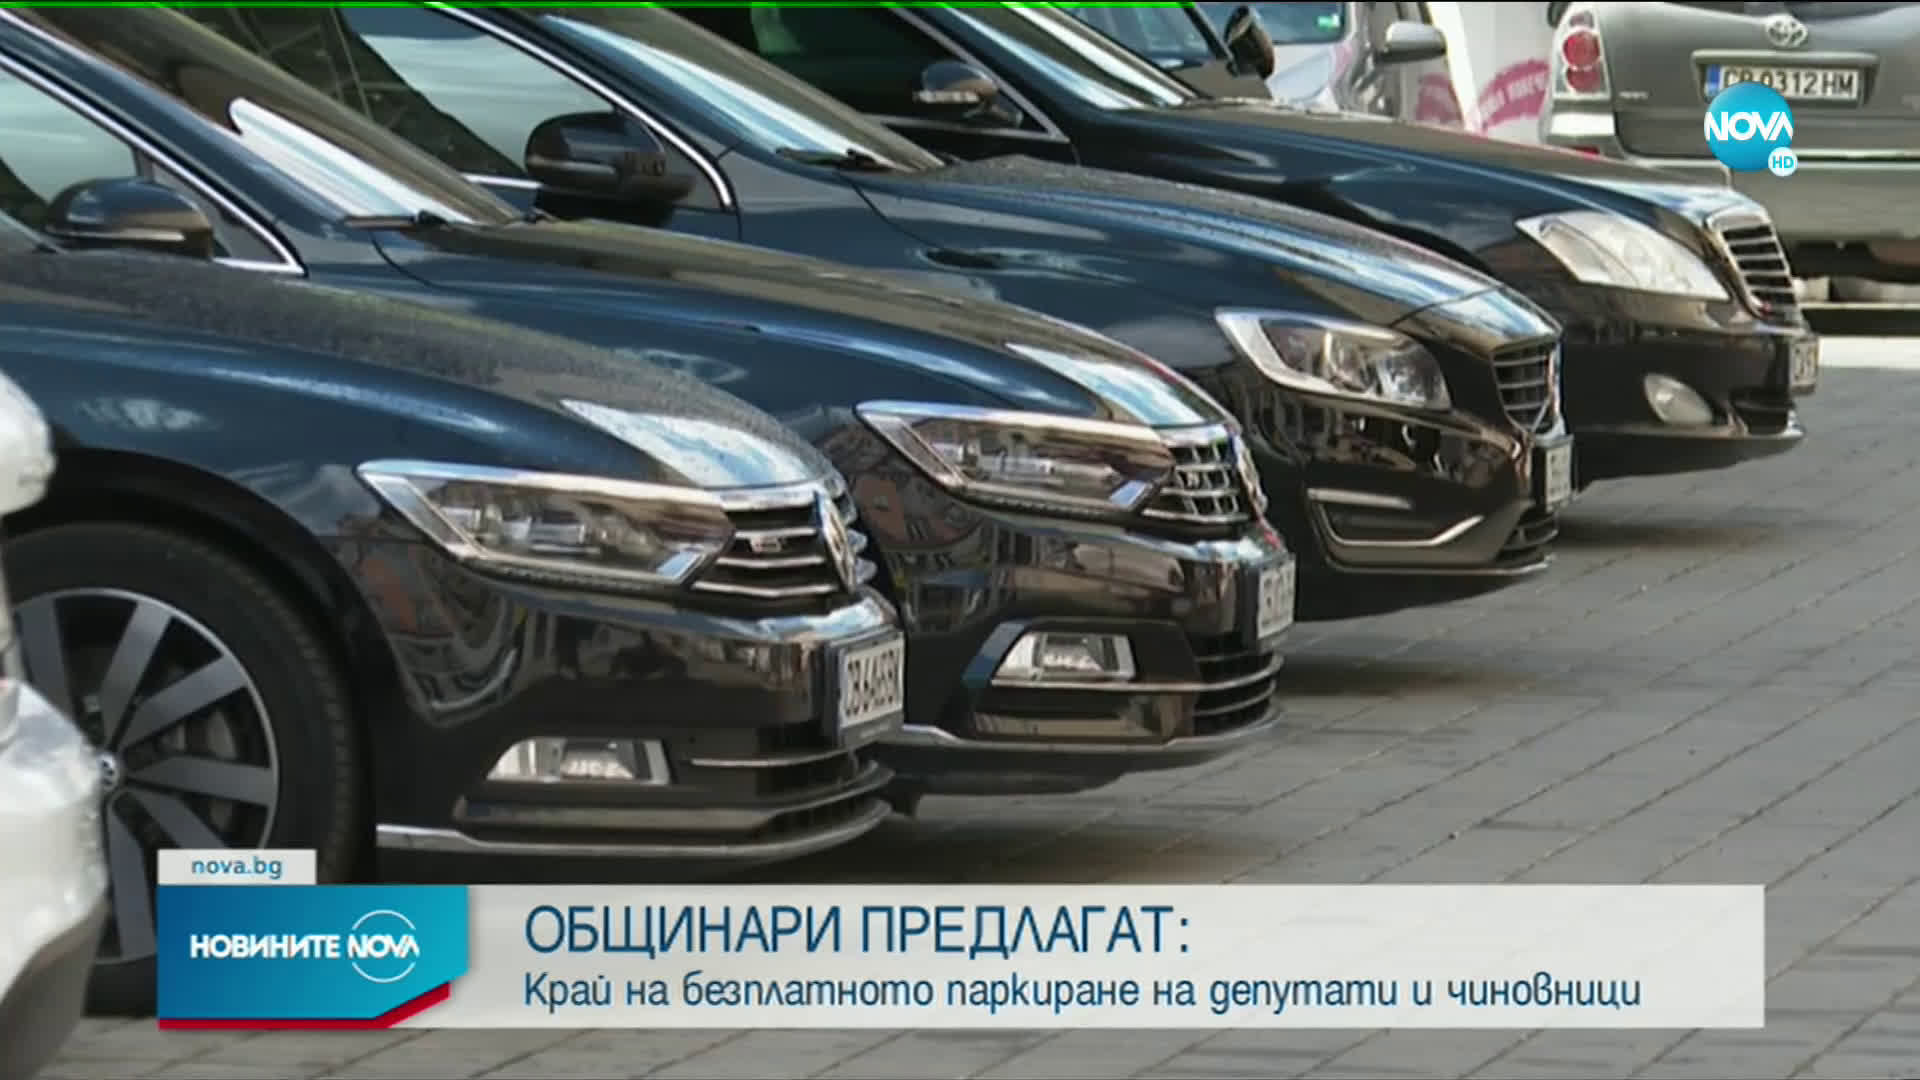 Общинари в София искат намаляване на безплатните паркоместа за чиновниците